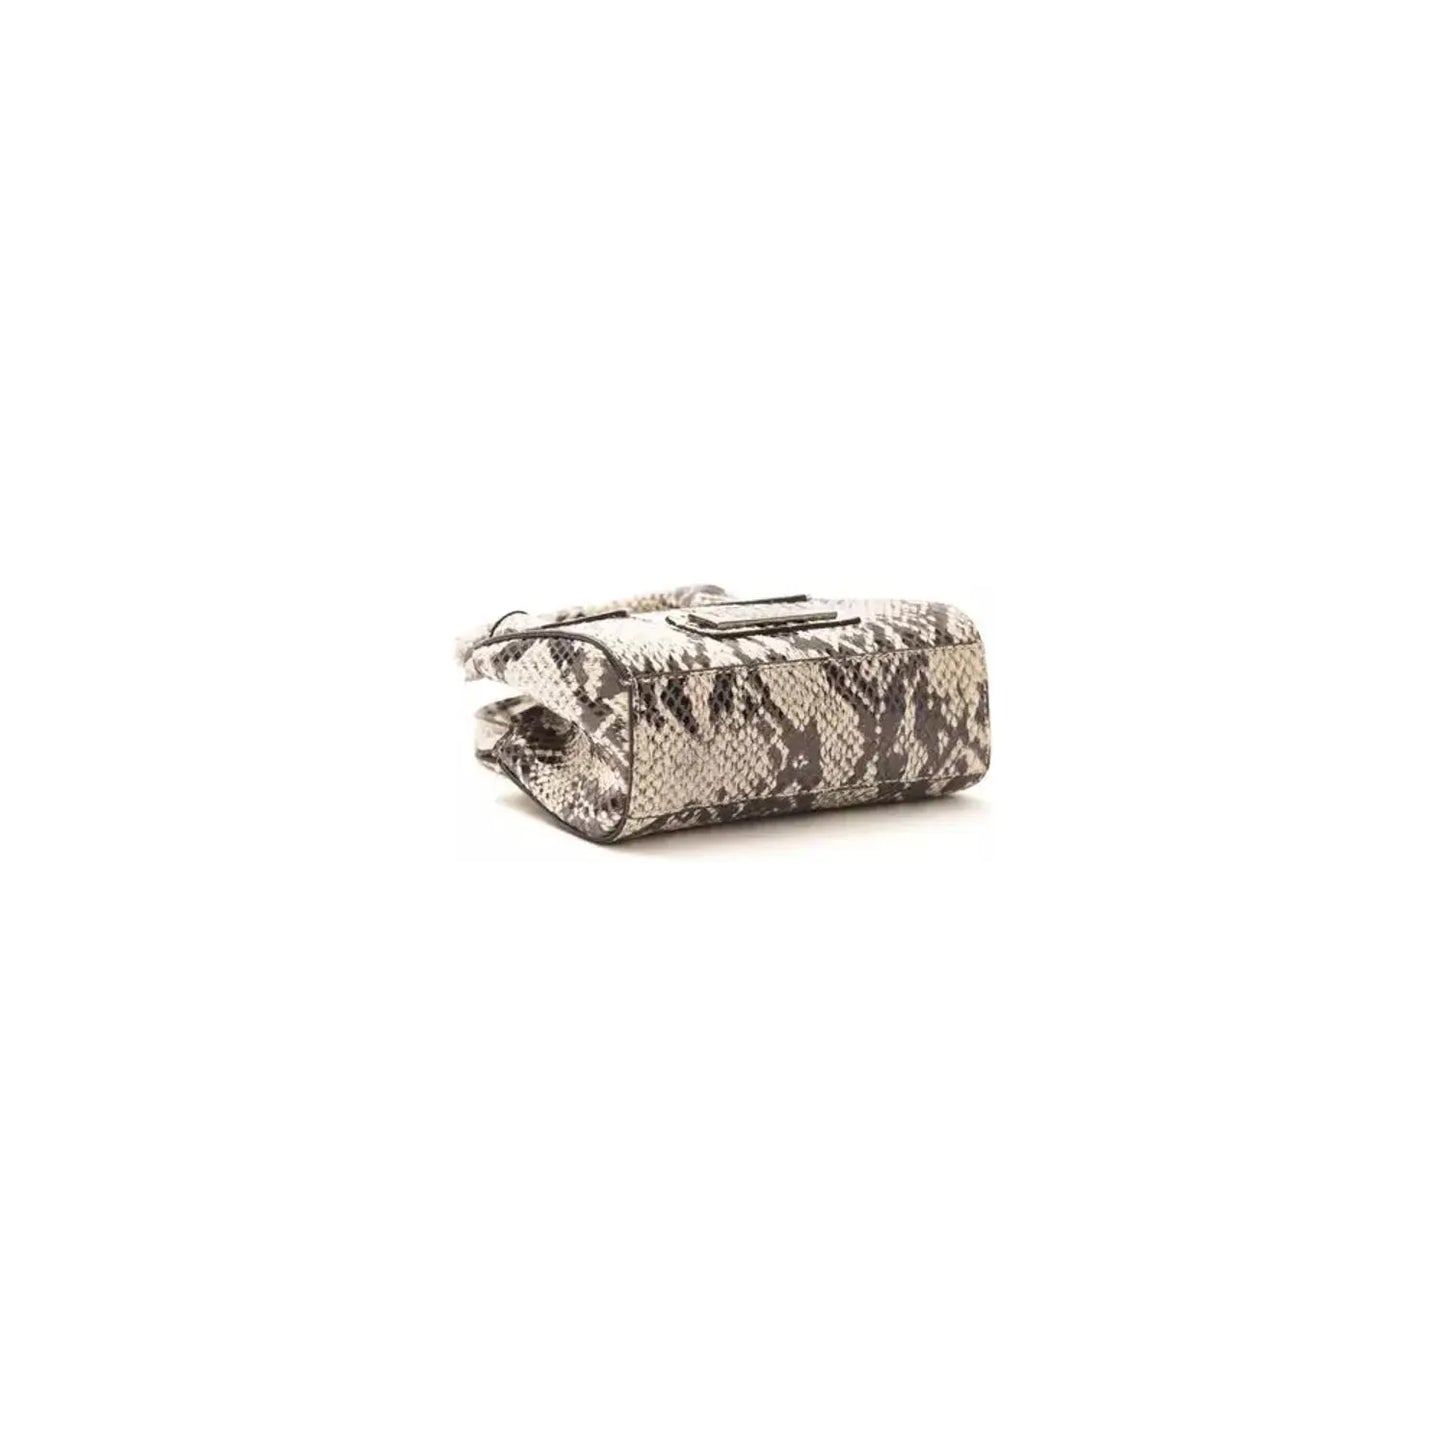 Pompei Donatella Chic Gray Python Mini Tote With Adjustable Straps roccia-stone-handbag stock_product_image_5781_190740916-28-747ffa1f-a22.webp